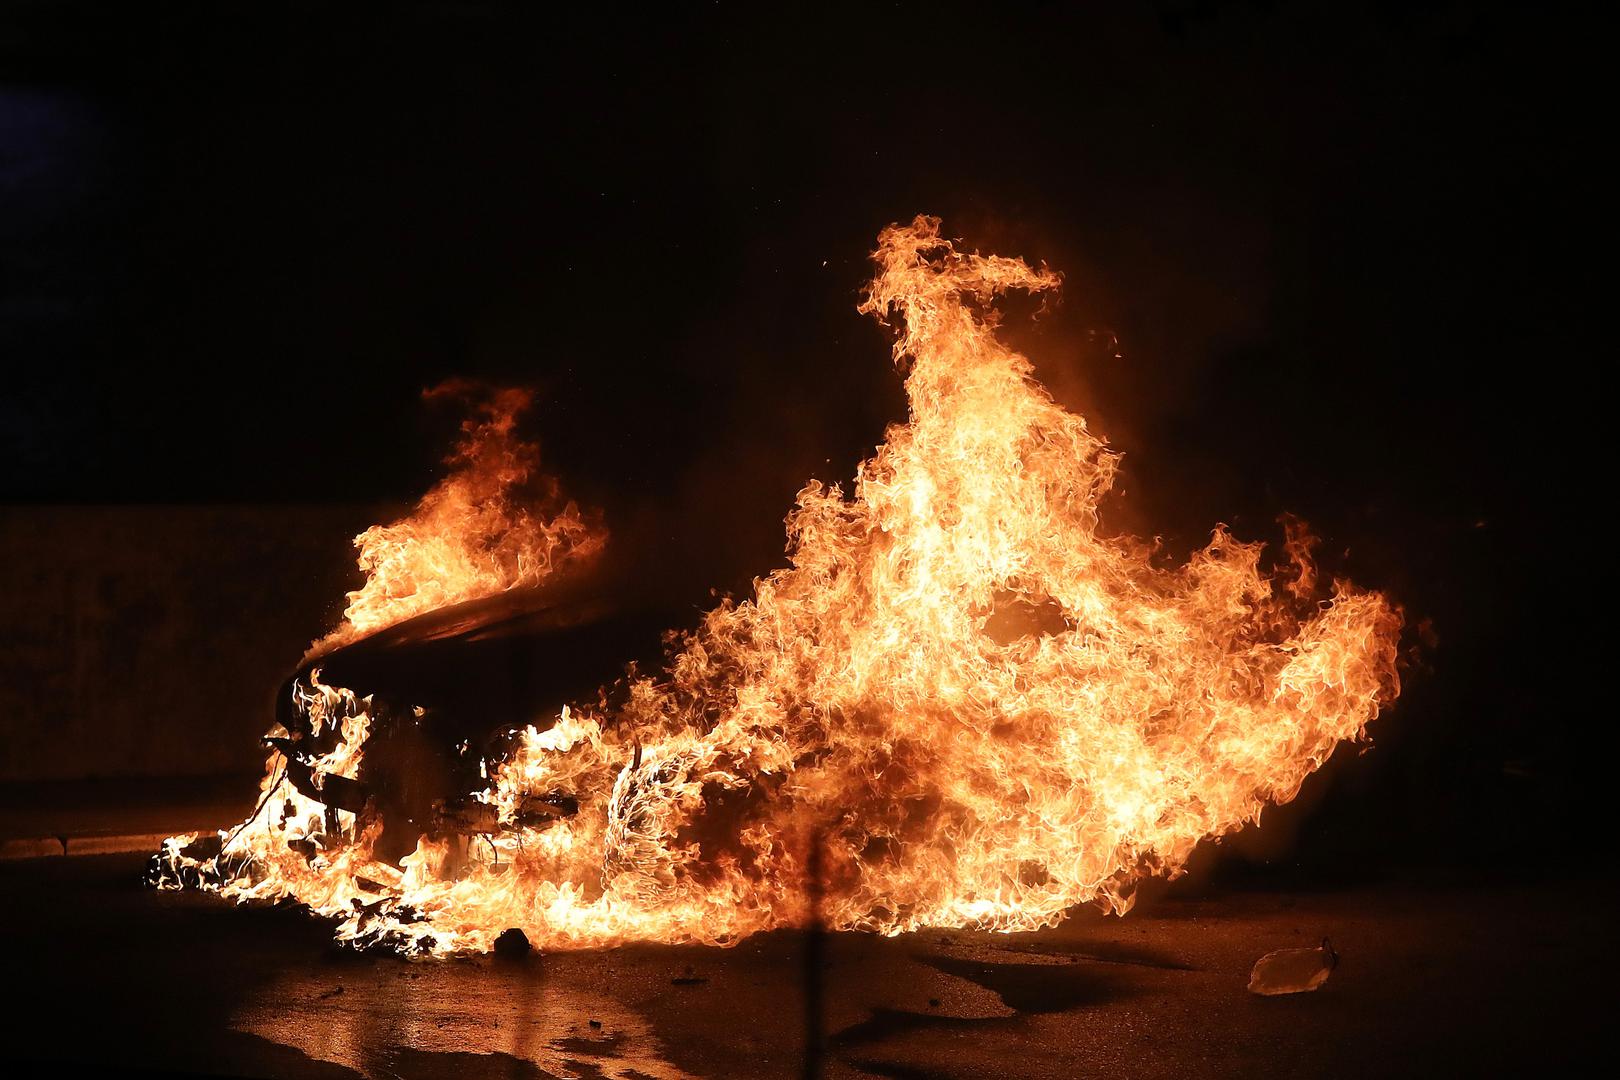 U Zadru oko 2.30 sati u noći na Bedemima zadarskih pobuna uz Muzej antičkog stakla planuo je automobil BMW serije 5, a očevidom je utvrđeno da je požar namjerno izazvan